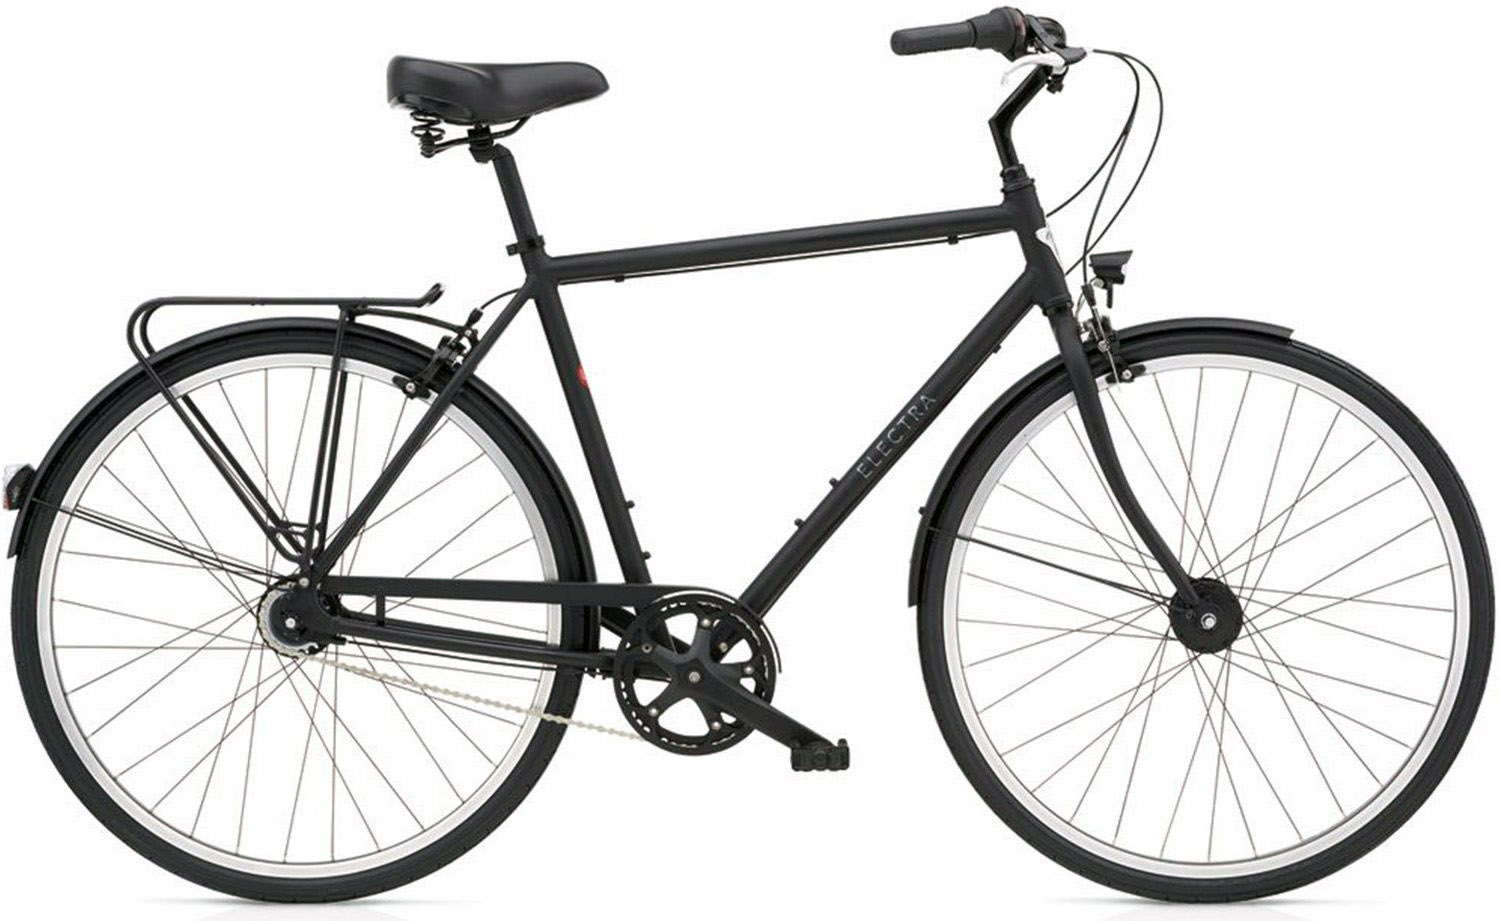  Отзывы о Городском велосипеде Electra Loft 7i EQ Mens (2021) 2021